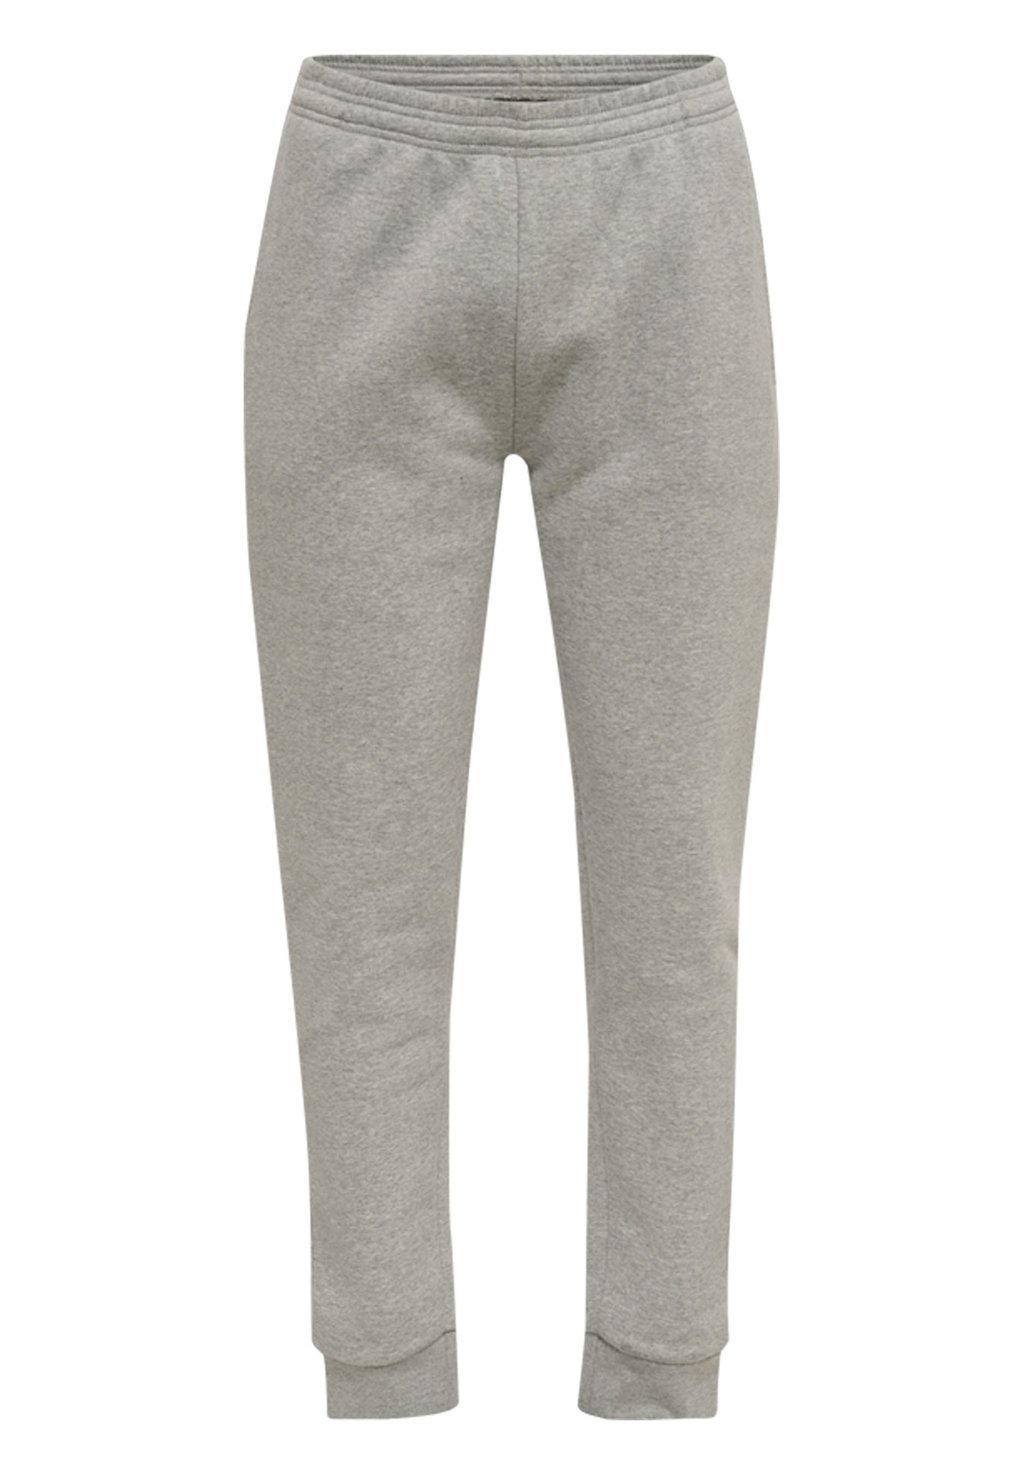 Спортивные брюки Hummel, серый меланж брюки спортивные мужские dysot серый меланж